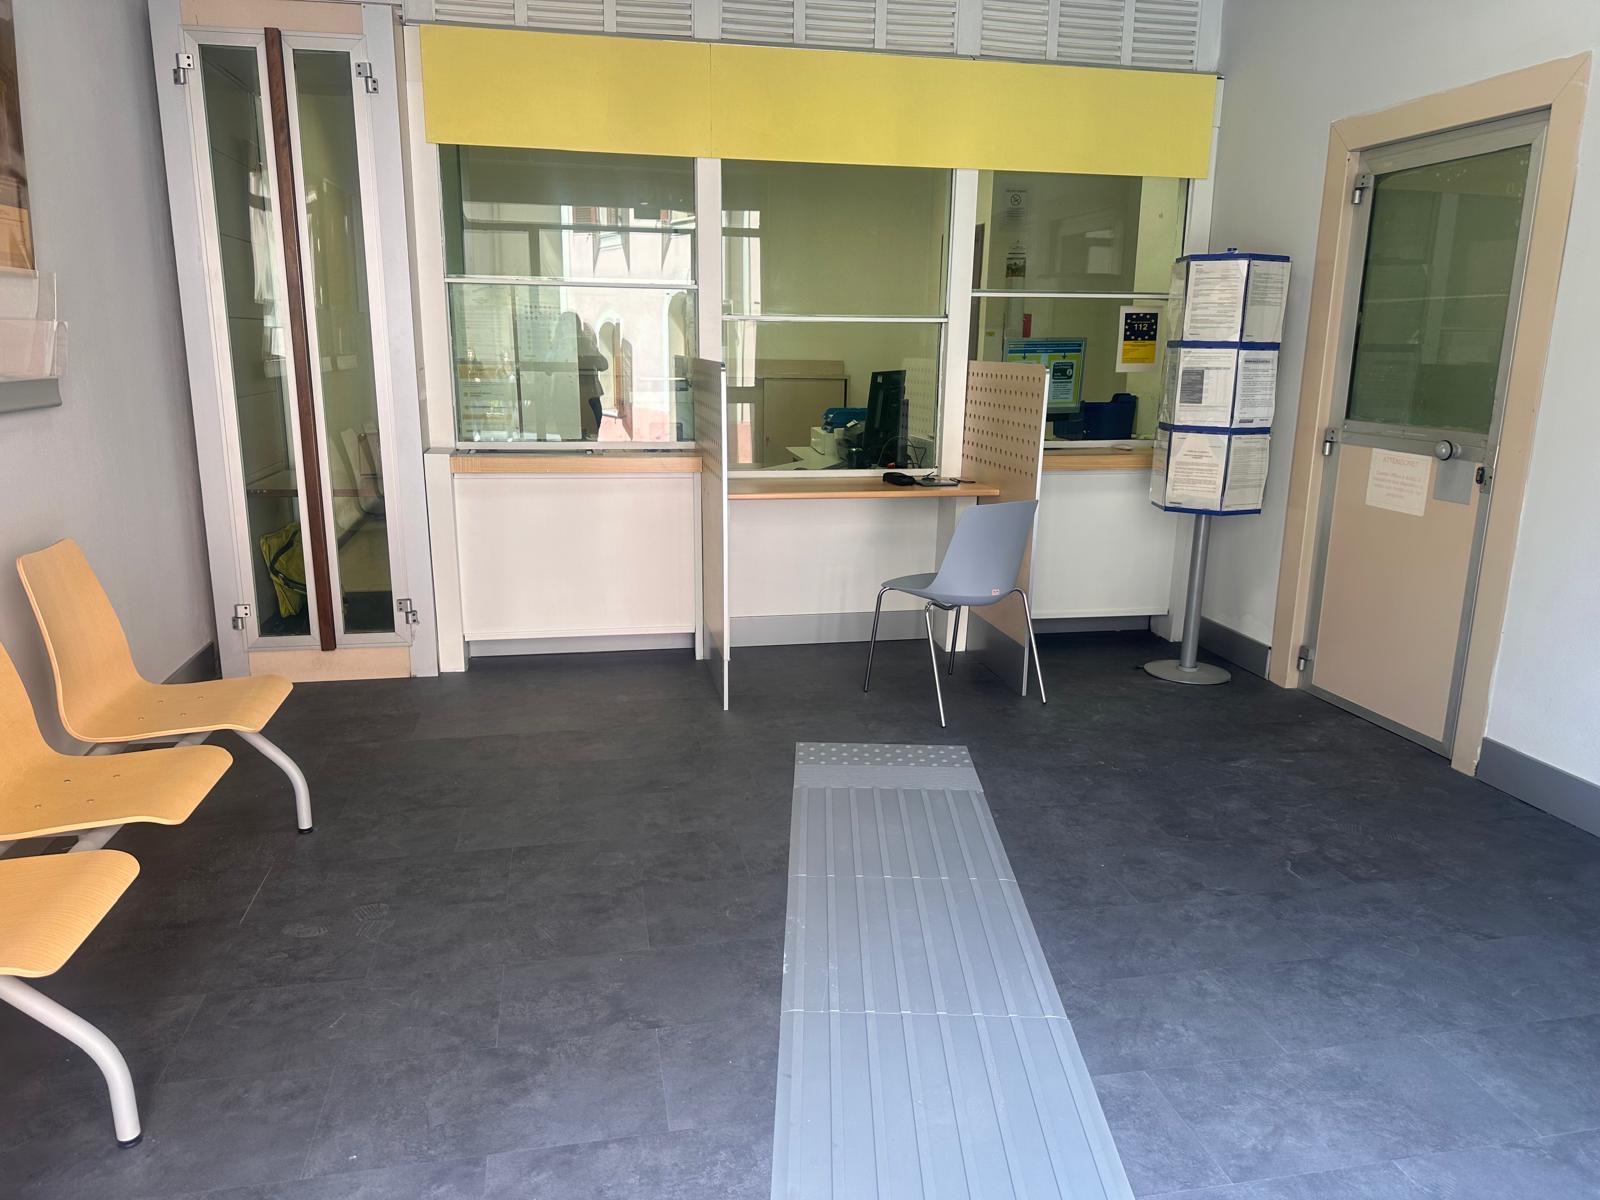 L’ufficio postale di Nughedu San Nicolò di nuovo operativo nella versione “Polis”